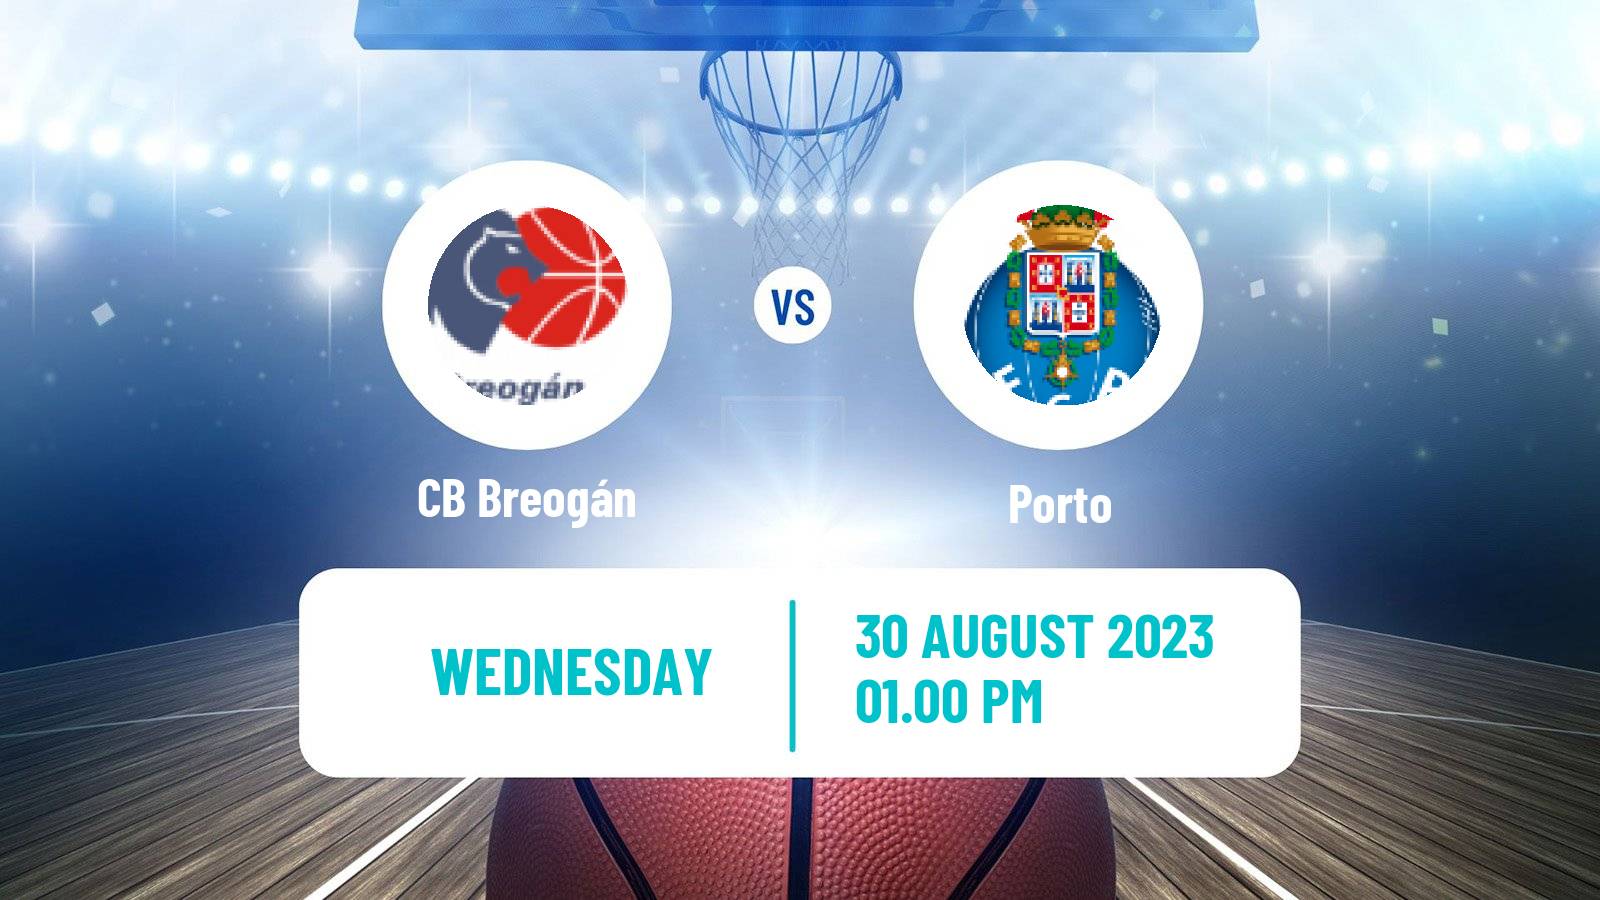 Basketball Club Friendly Basketball CB Breogán - Porto